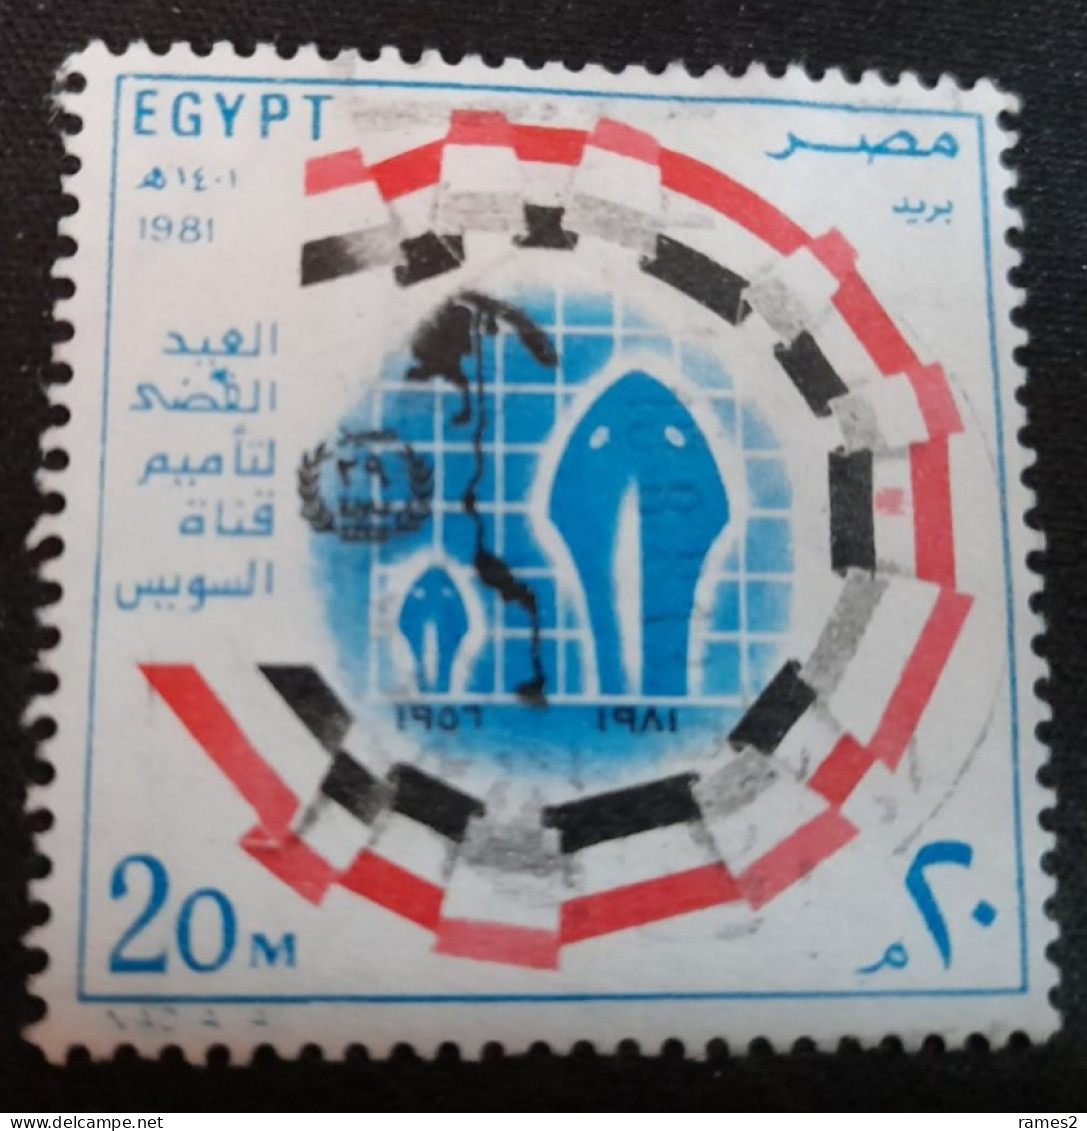 Egypte > 1953-.... République > 1980-89 > Oblitérés N° 1147 - Gebraucht